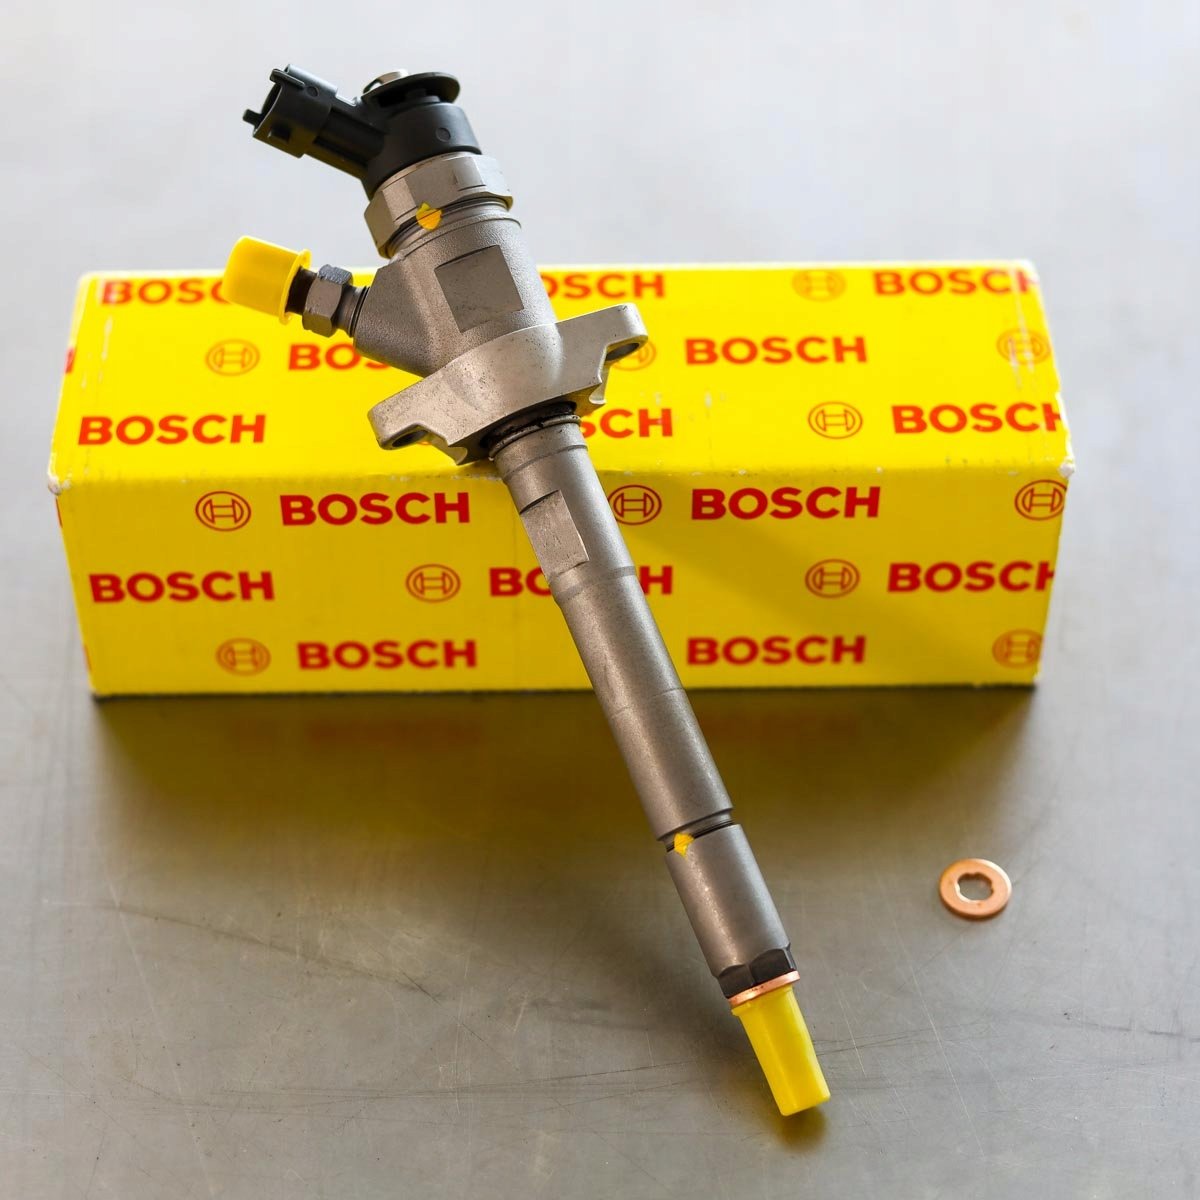 Wtryskiwacz Bosch po naprawie gotowy do wysyłki do kupującego na gwarancji w świetnej cenie